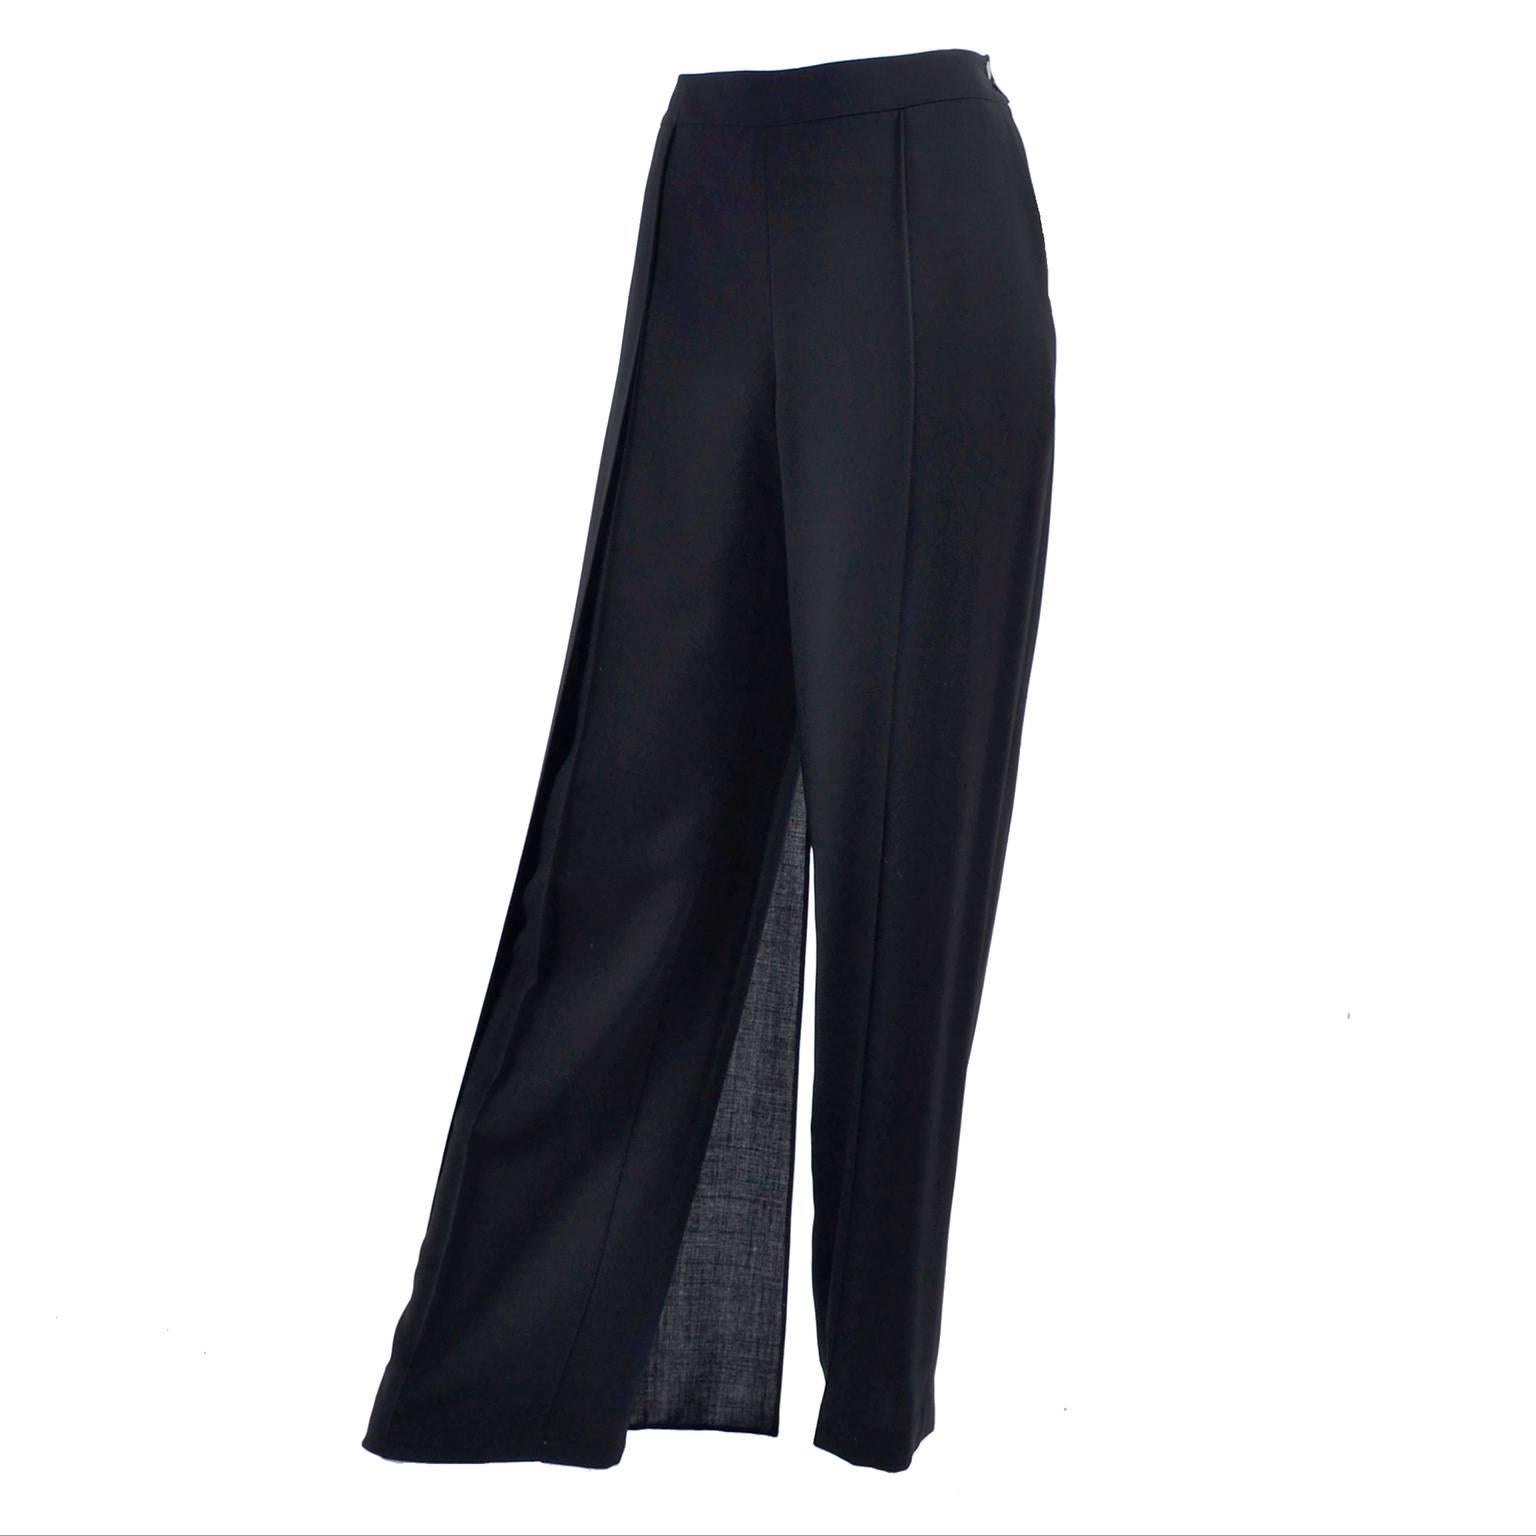 Chanel - Pantalon en laine noire, taille haute et panneau latéral à braguette, 40 US 10, 1990, état neuf en vente